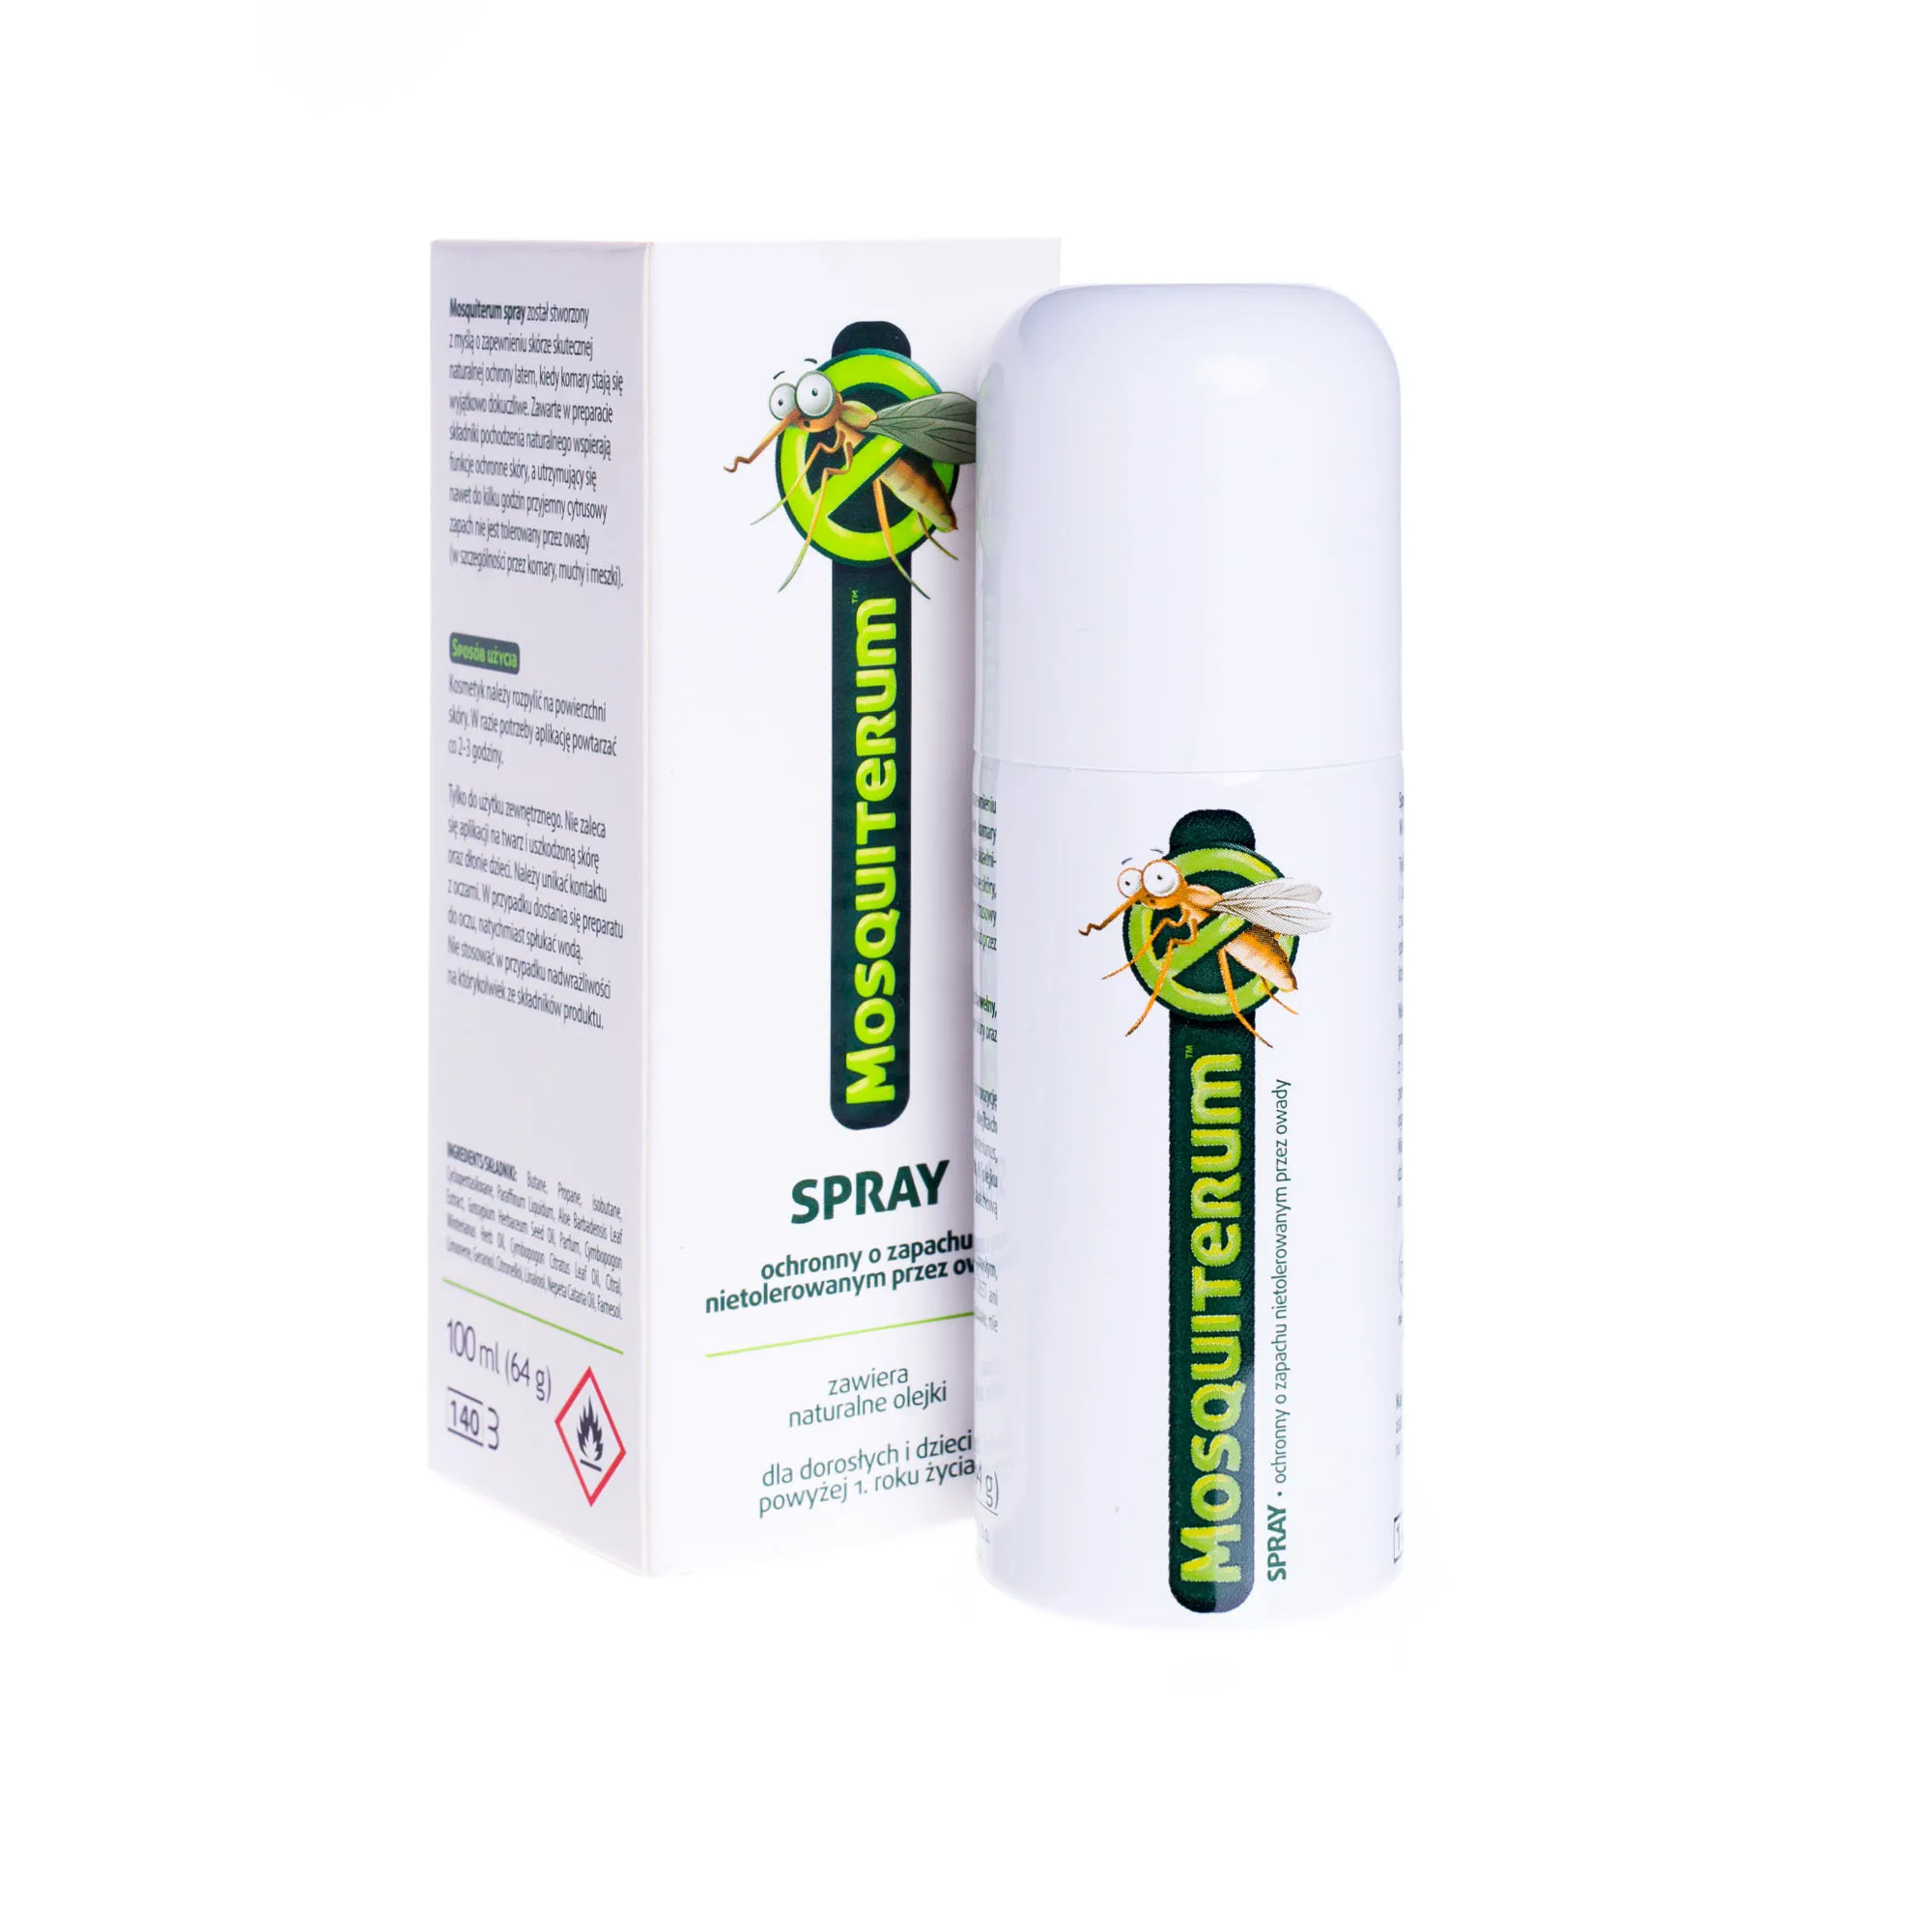 Mosquiterum, spray ochronny o zapachu nietolerowanym przez owady, 100 ml